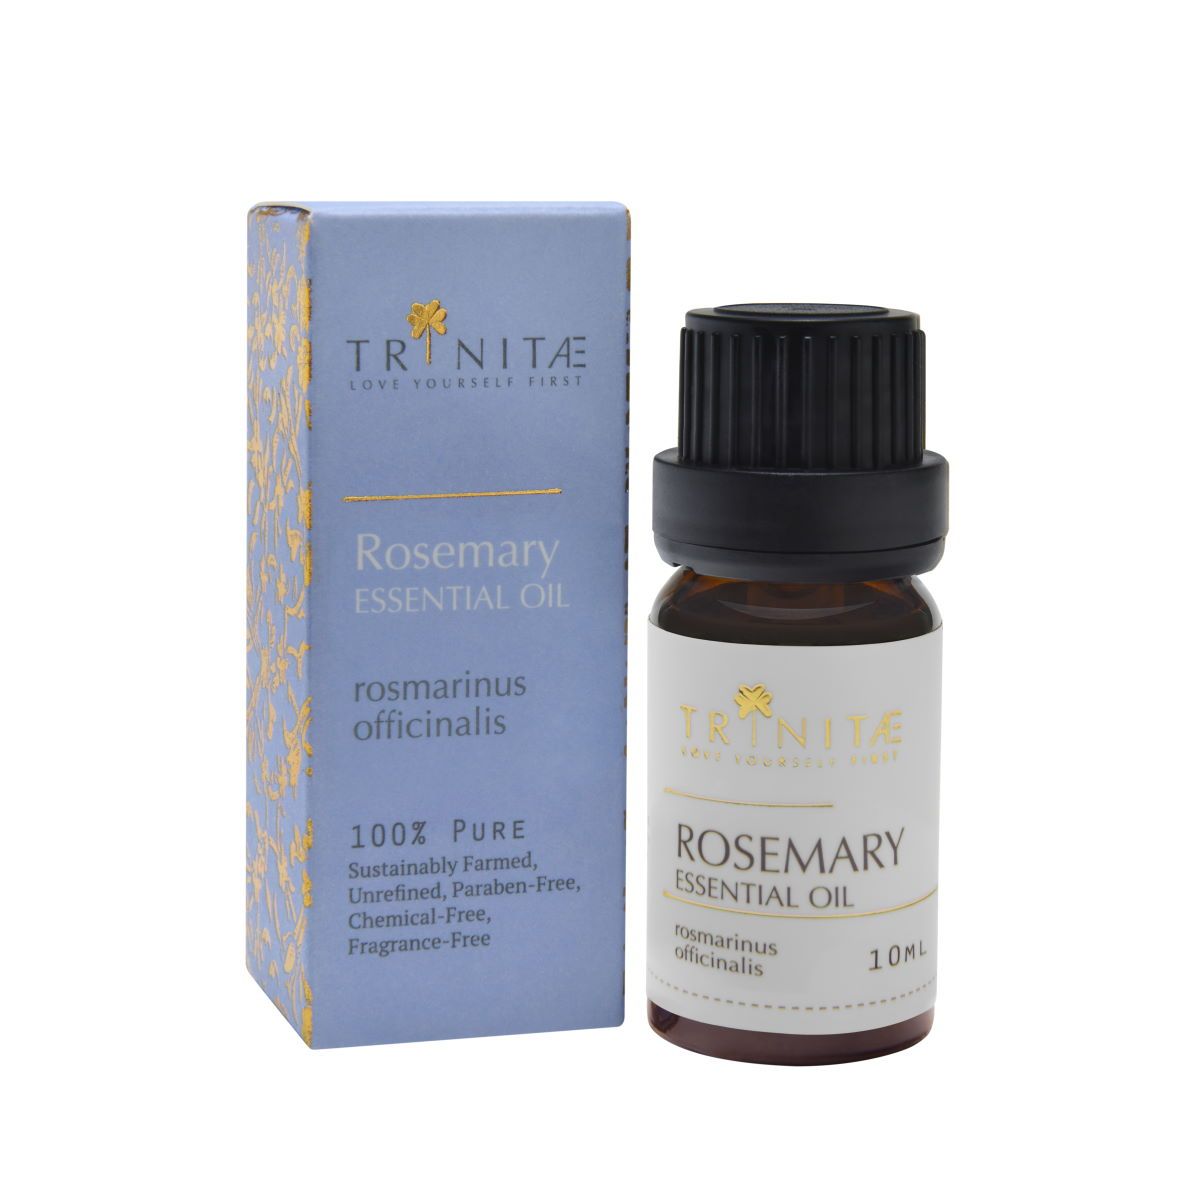 Rosemary Essential Oil rosmarinus officinalis